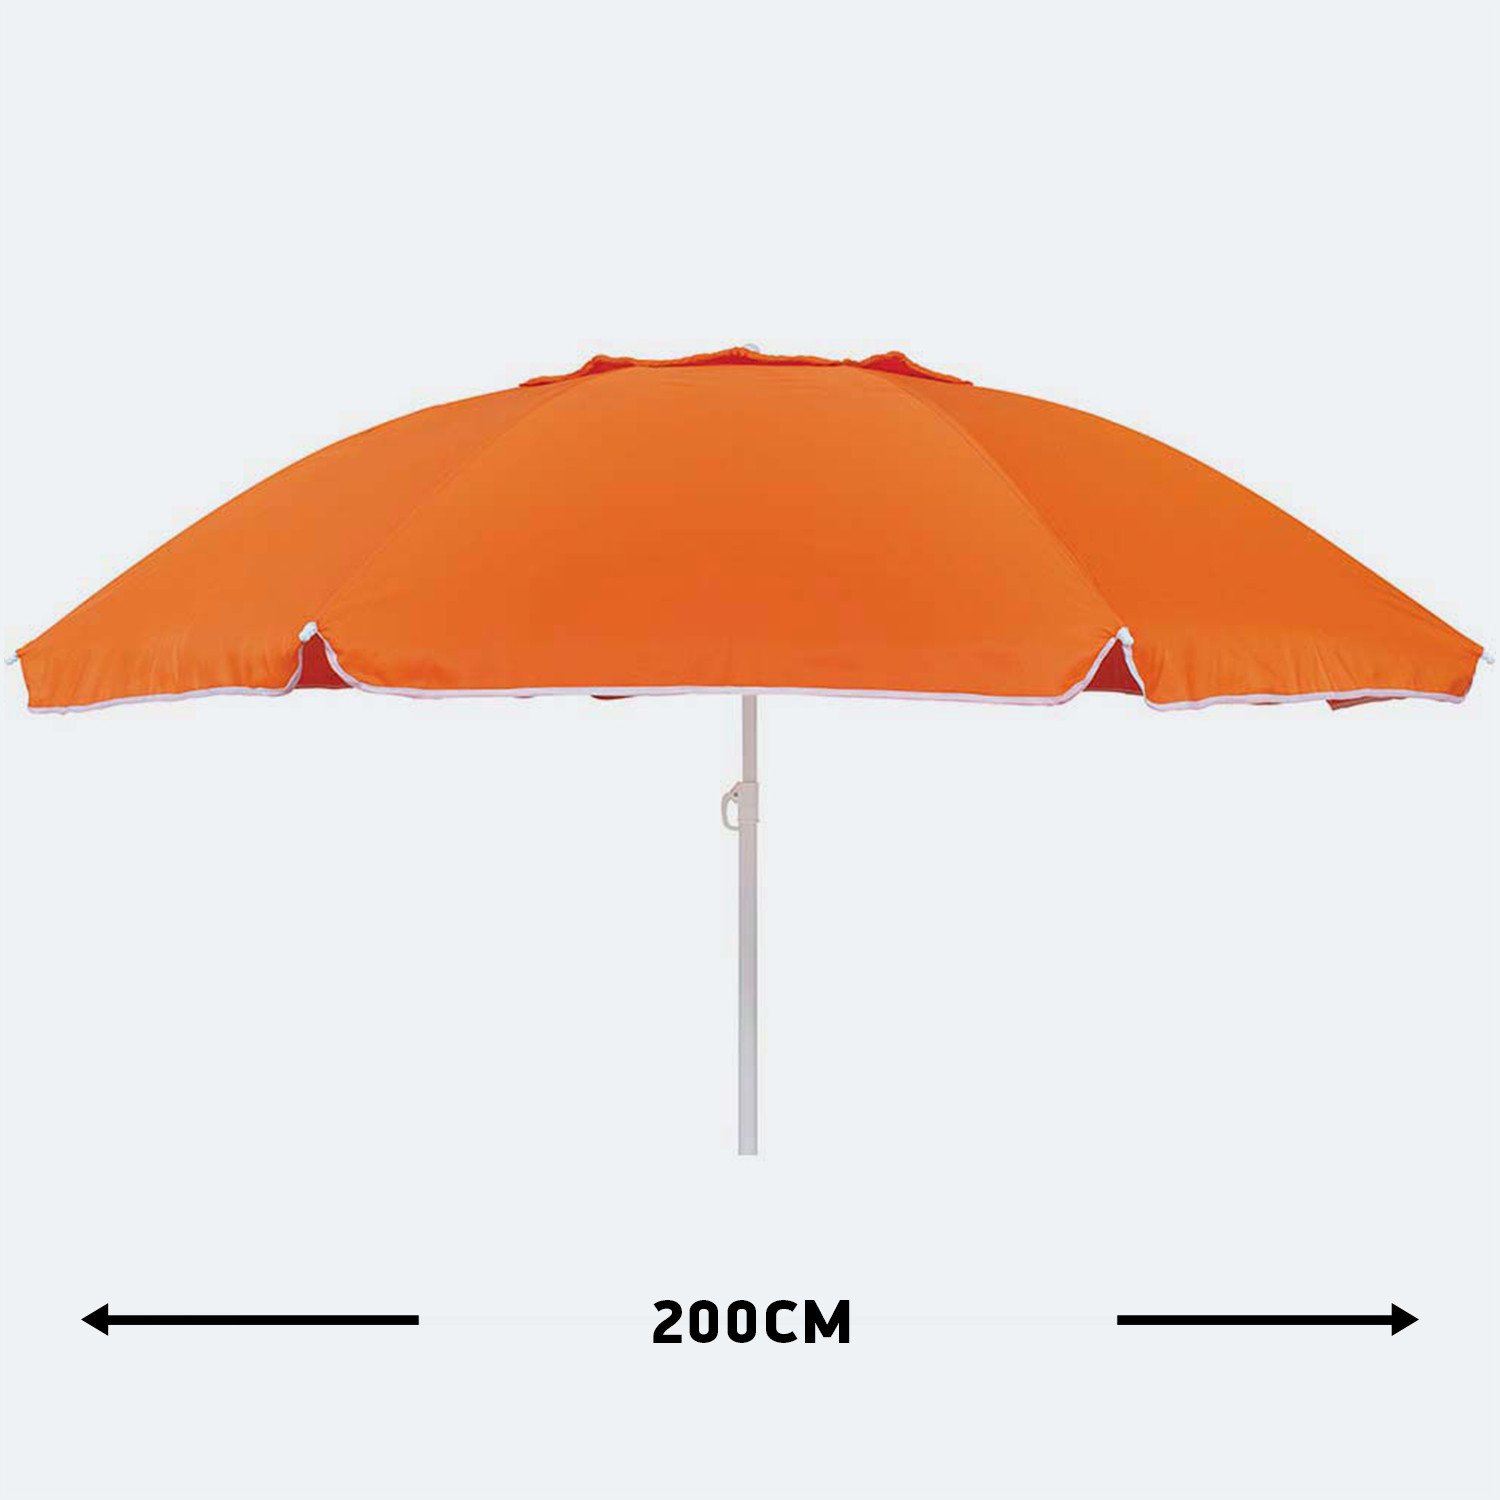 Escape Ομπρέλα Παραλίας 200cm (2 Ατόμων) (9000011144_33400)